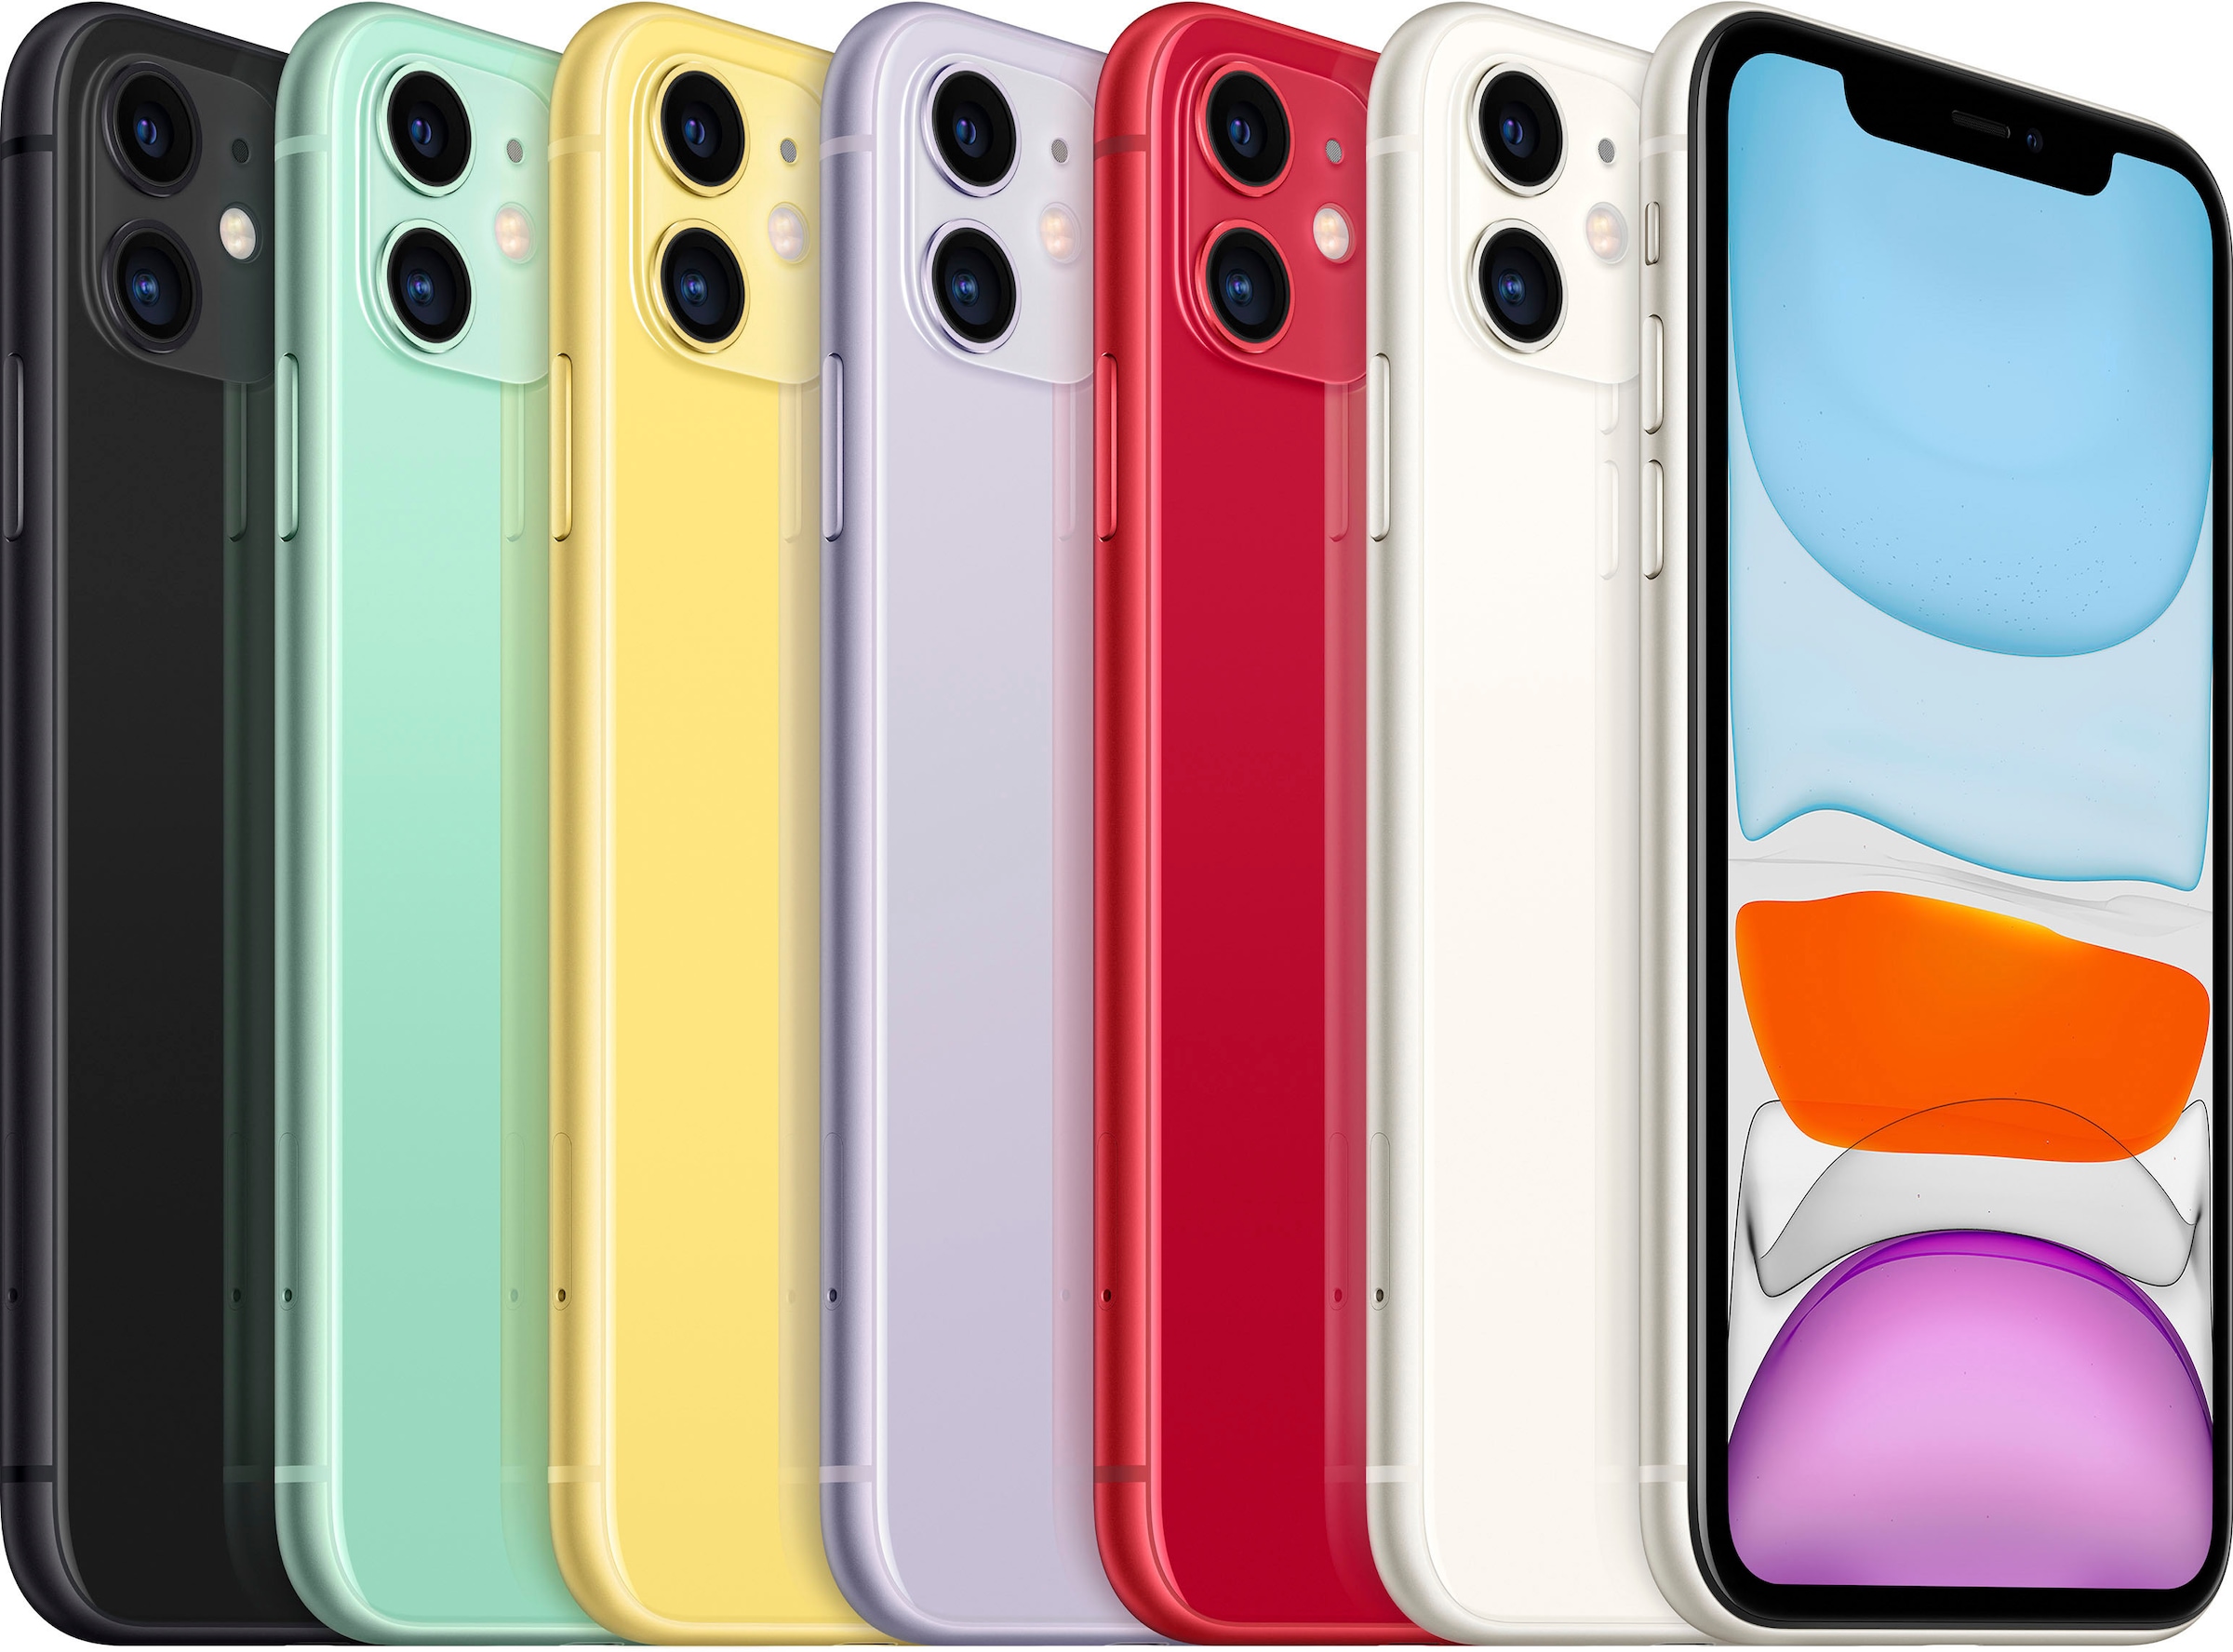 Apple Smartphone »iPhone 11«, grün, 15,5 cm/6,1 Zoll, 128 GB Speicherplatz, 12 MP Kamera, ohne Strom-Adapter und Kopfhörer